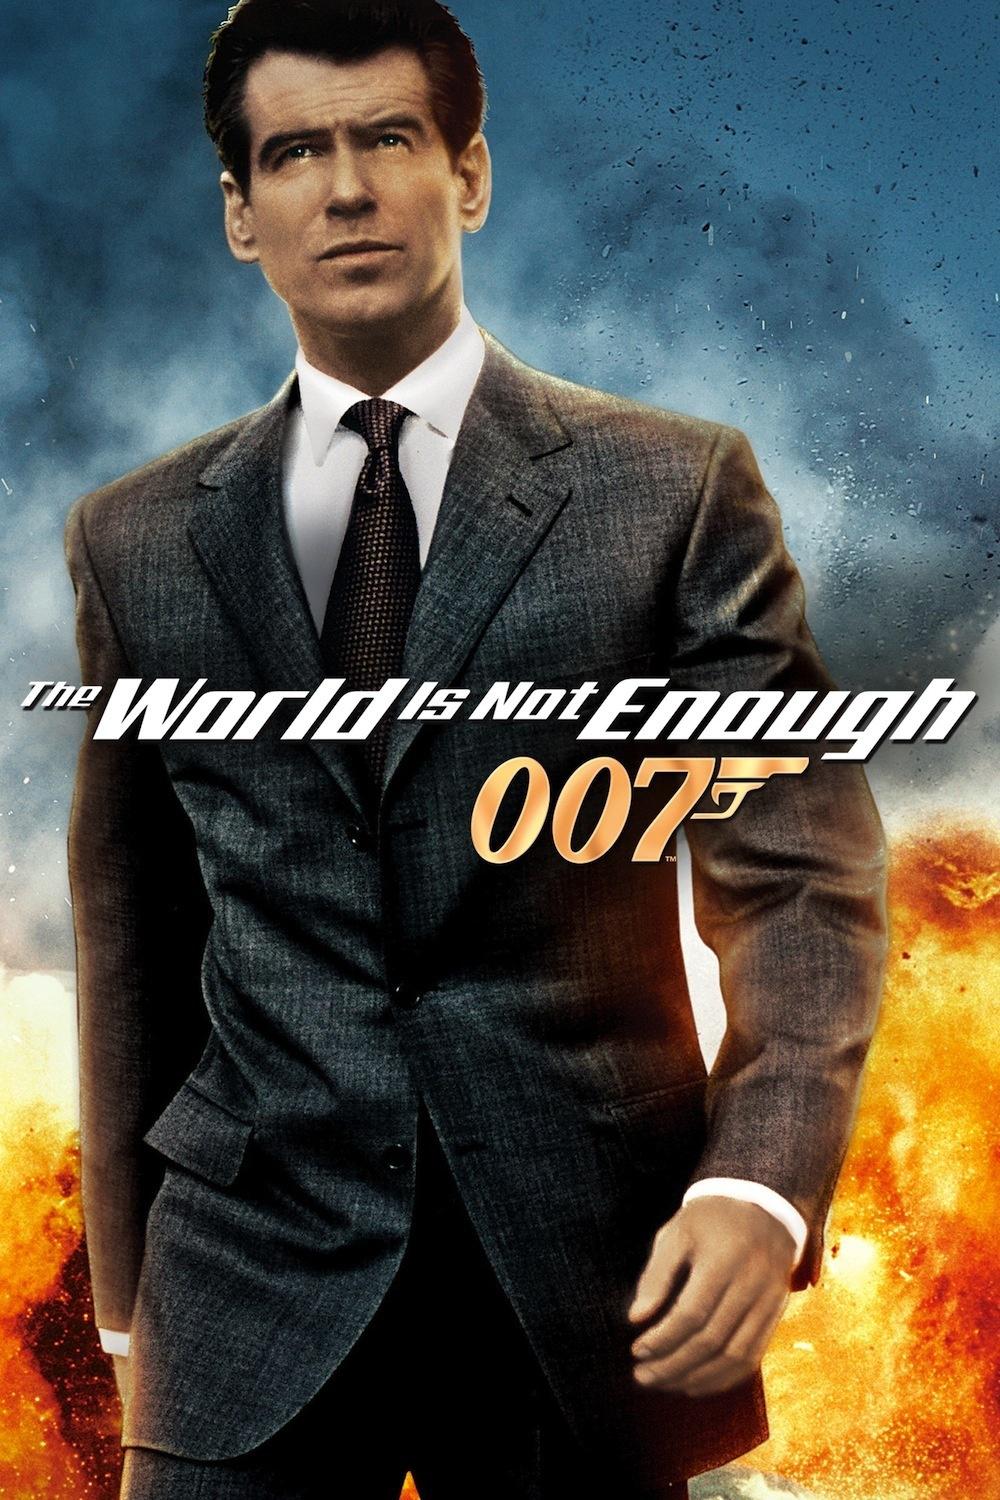 007系列电影共25部,迄今为止有六名演员扮演过詹姆斯·邦德,分别是